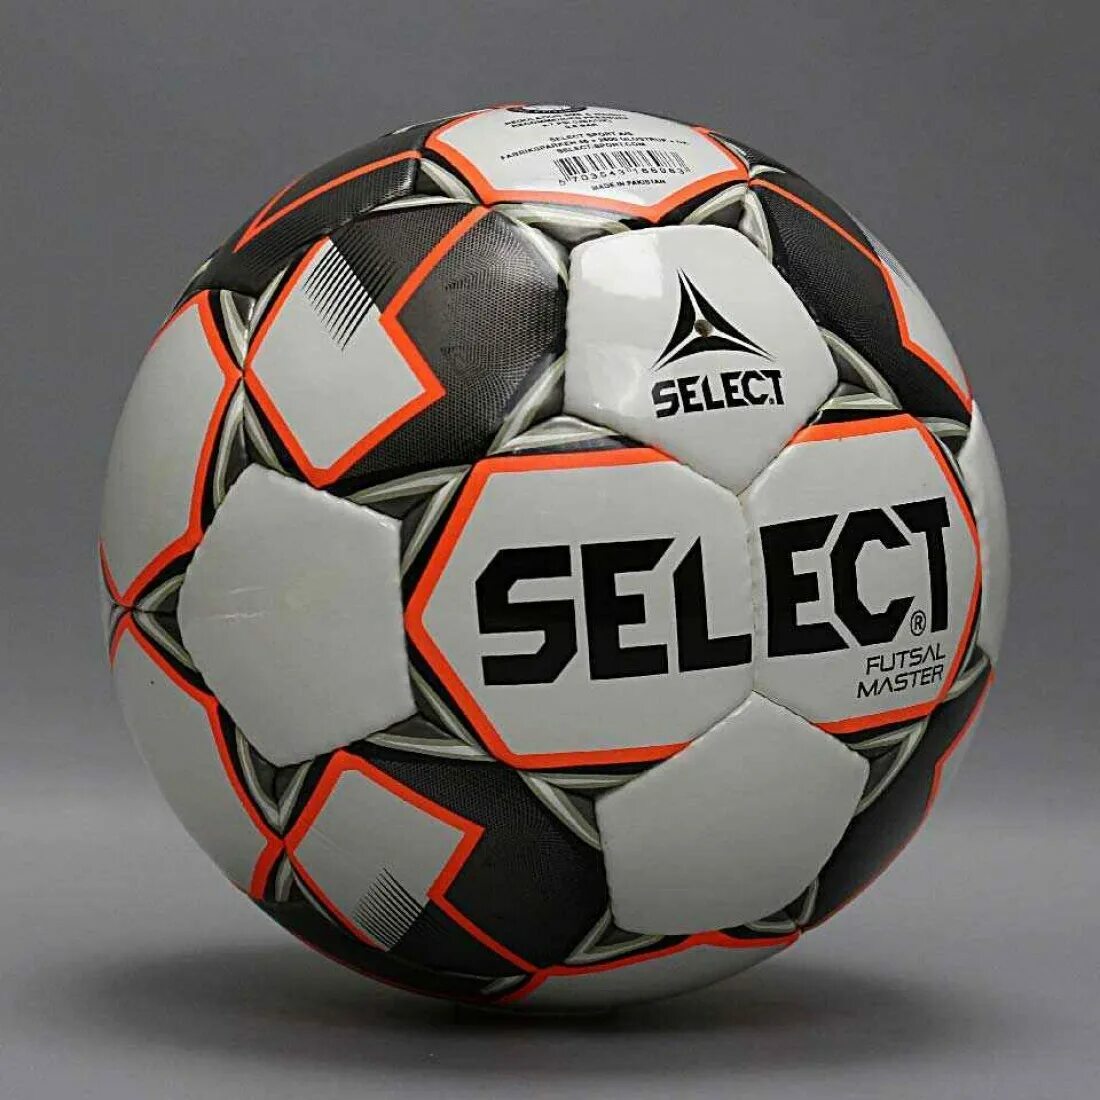 Селект спб. Футбольный мяч Селект 4. Футзальный мяч Селект. Мяч Селект 4 футзал. Мяч футбольный футзальный размер 4 select.